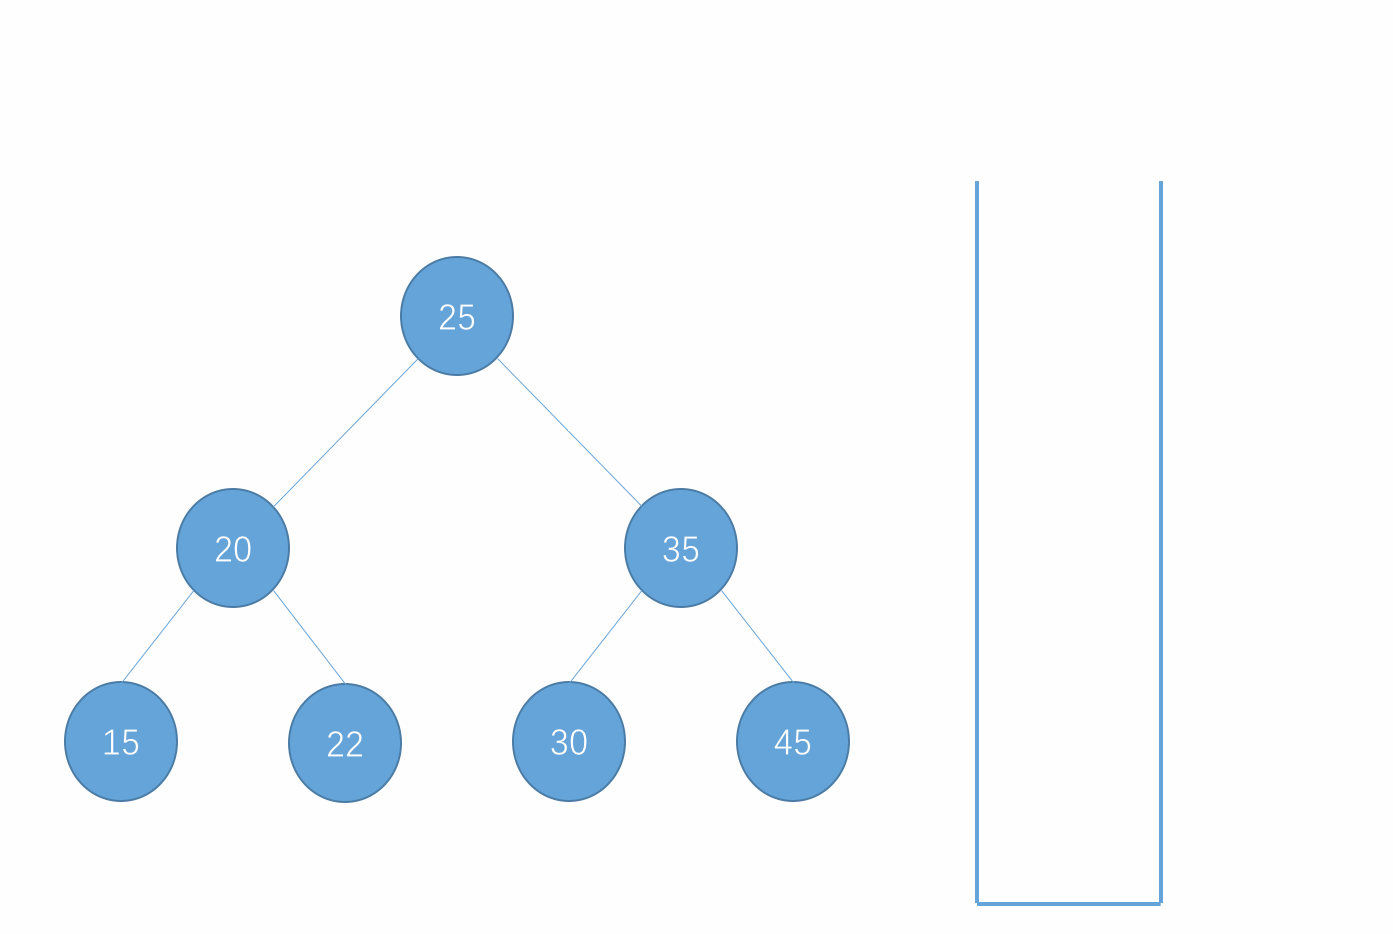 一篇文章让你了解二分搜索树的数据结构的实现过程（Java 实现）
树结构简介
二分搜索树的基础知识
二分搜索树的常见基本操作实现